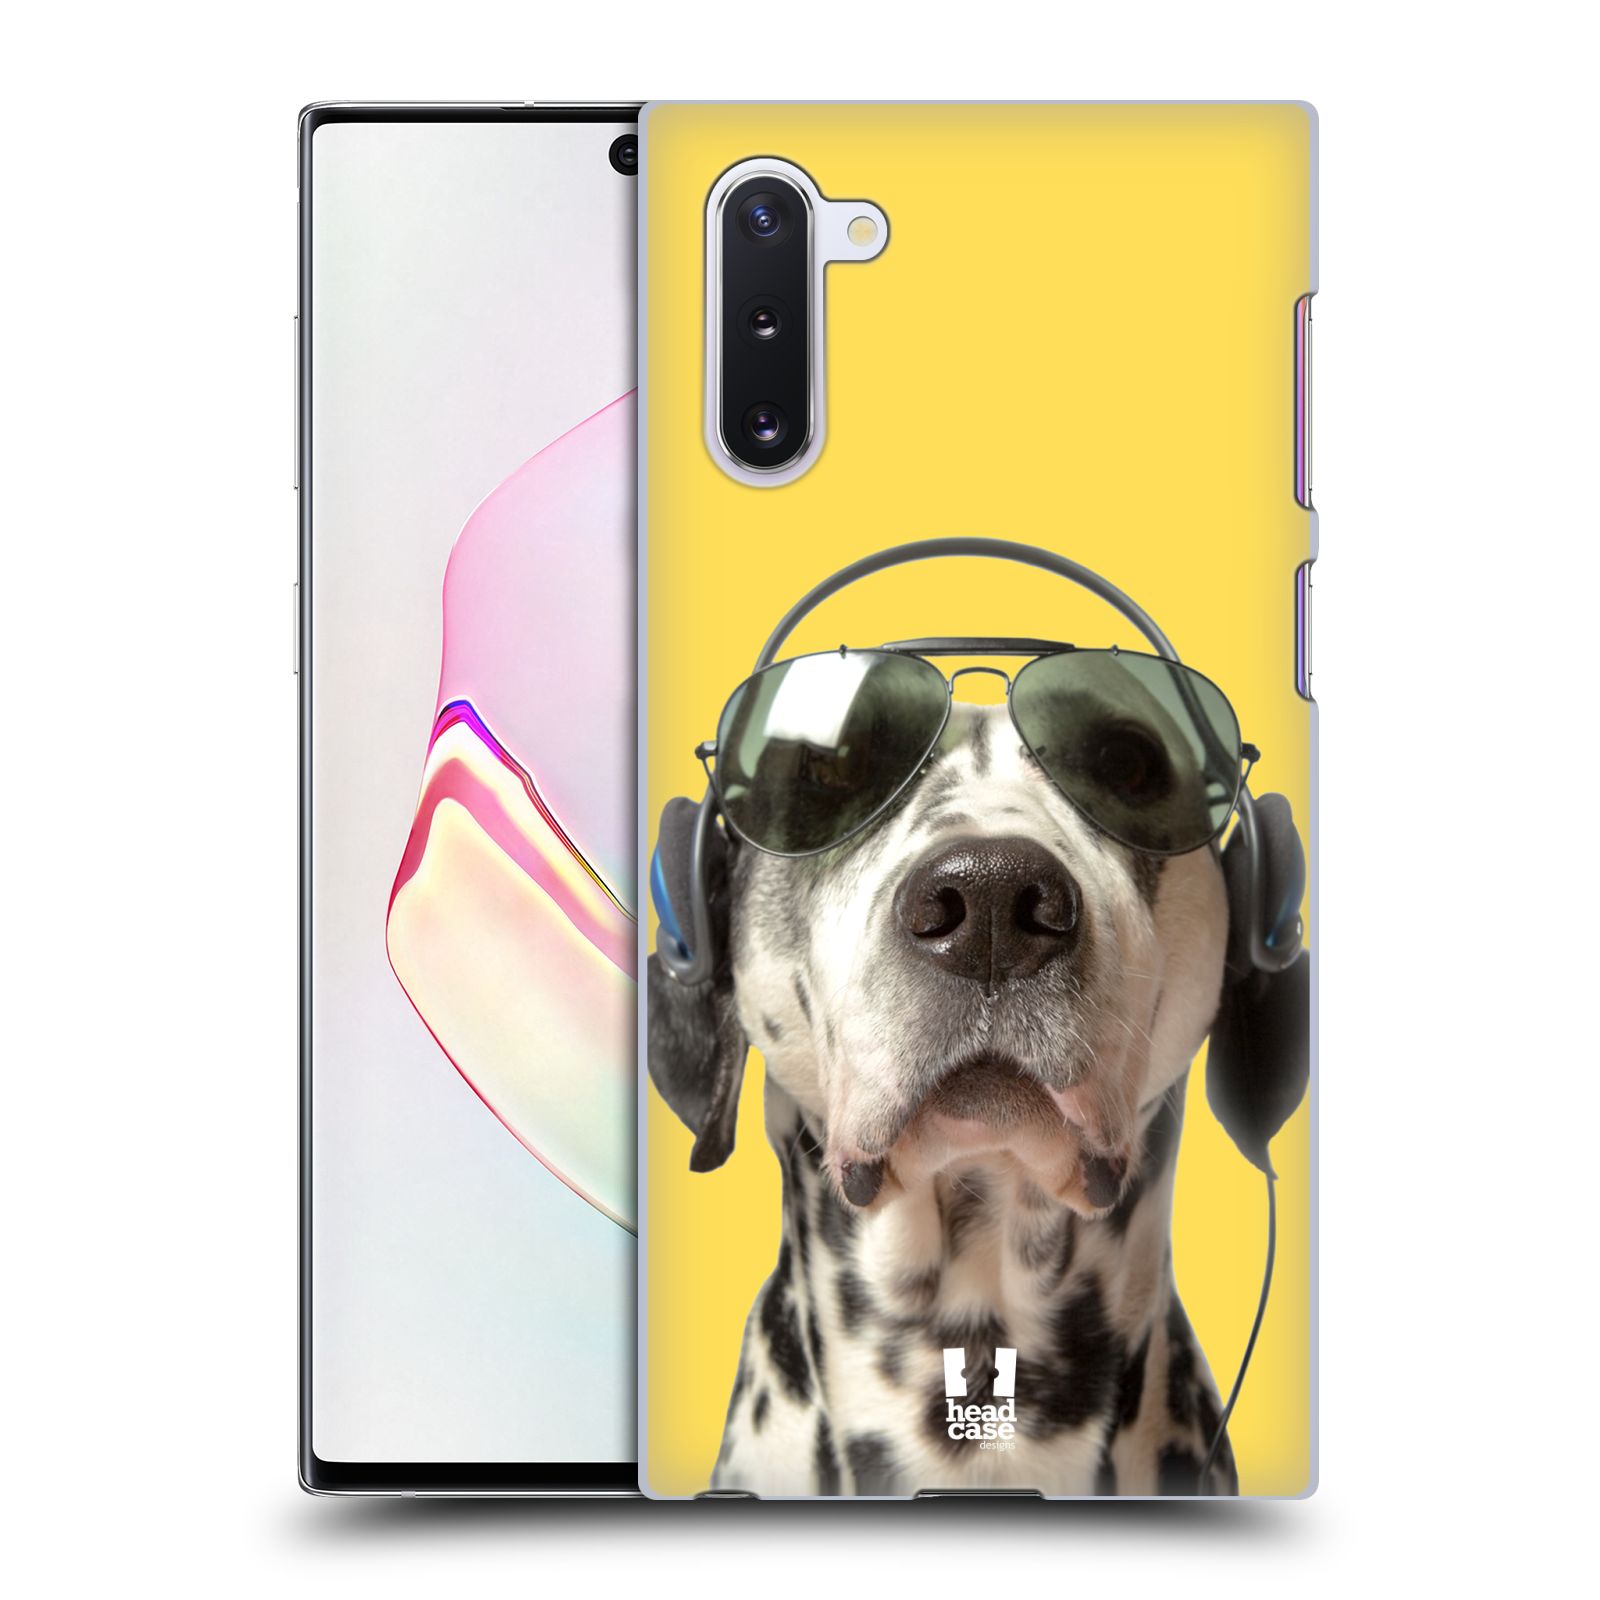 Pouzdro na mobil Samsung Galaxy Note 10 - HEAD CASE - vzor Legrační zvířátka dalmatin se sluchátky žlutá